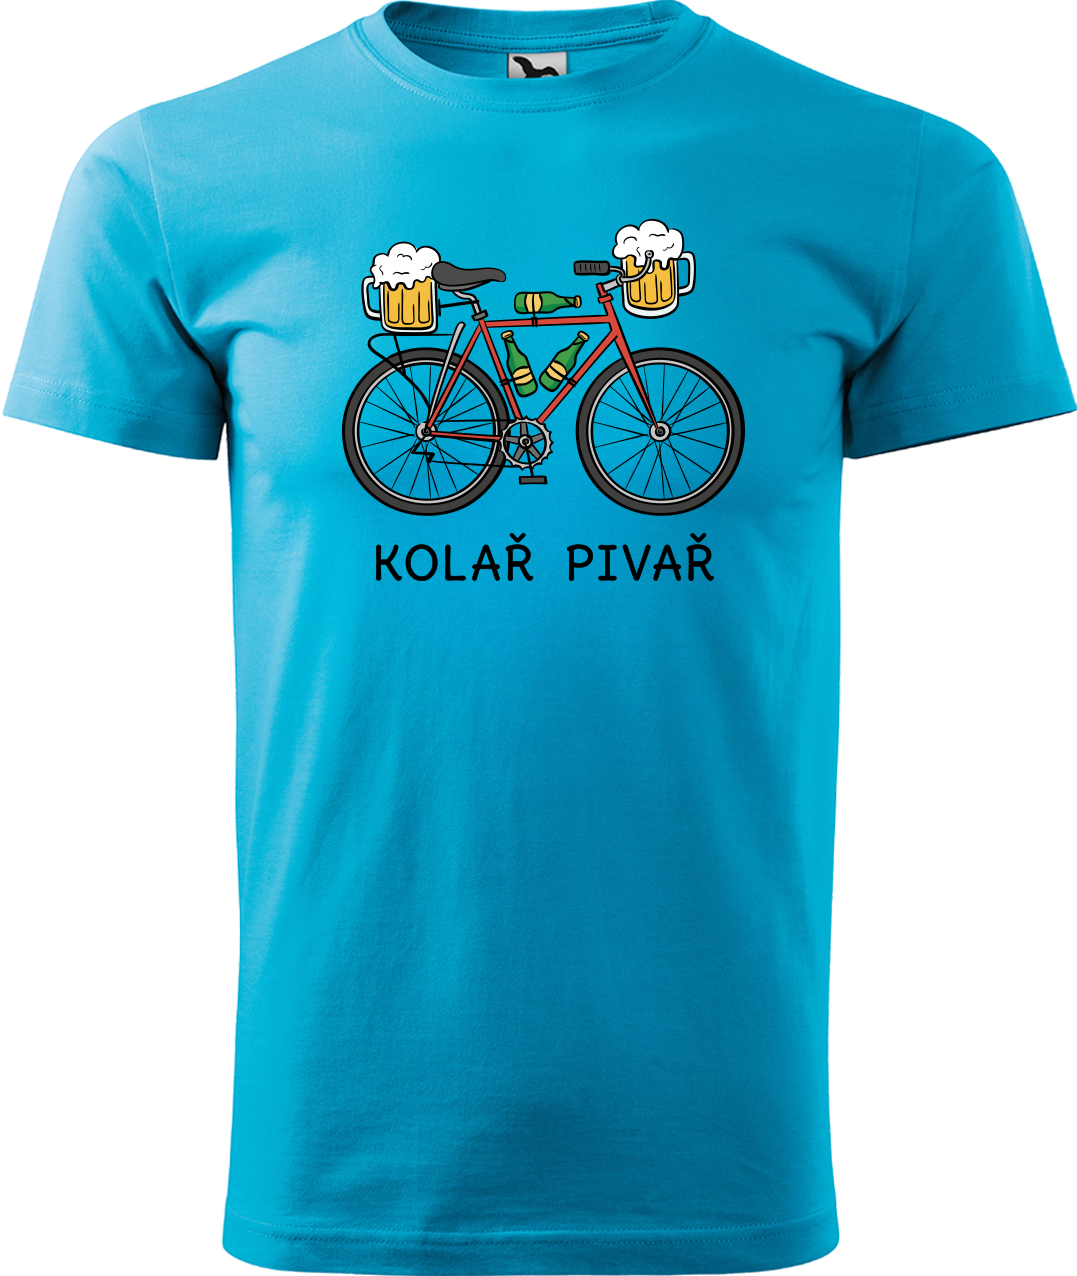 Pánské tričko s kolem - Kolař pivař Velikost: XL, Barva: Tyrkysová (44)